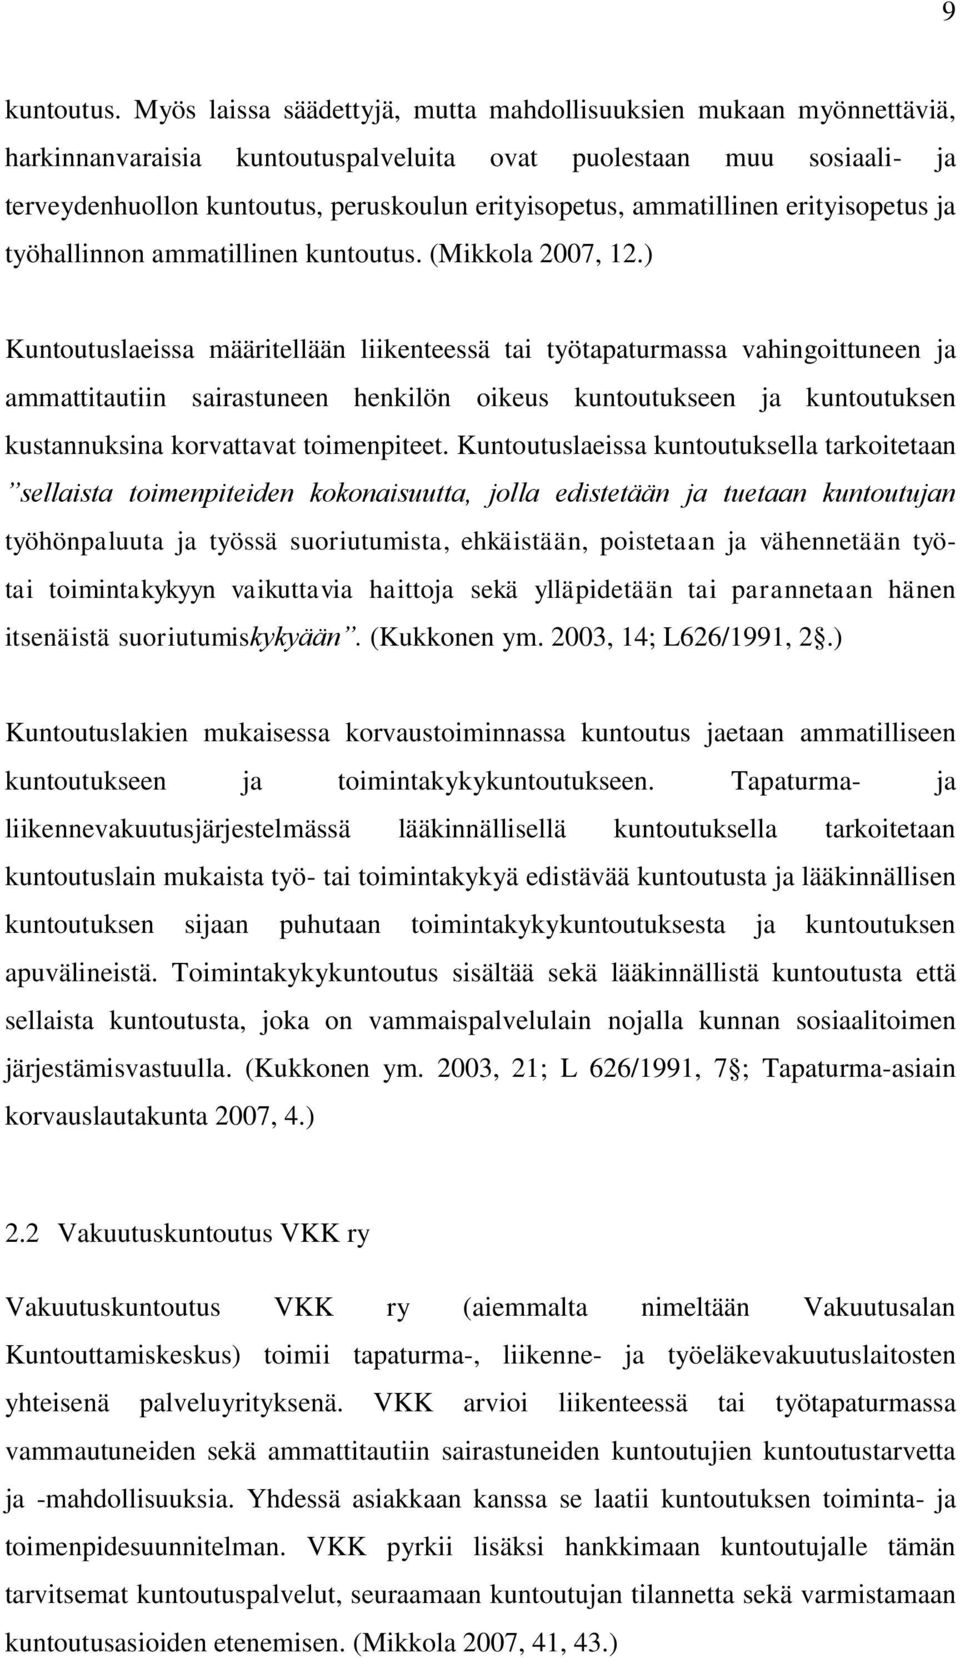 ammatillinen erityisopetus ja työhallinnon ammatillinen kuntoutus. (Mikkola 2007, 12.